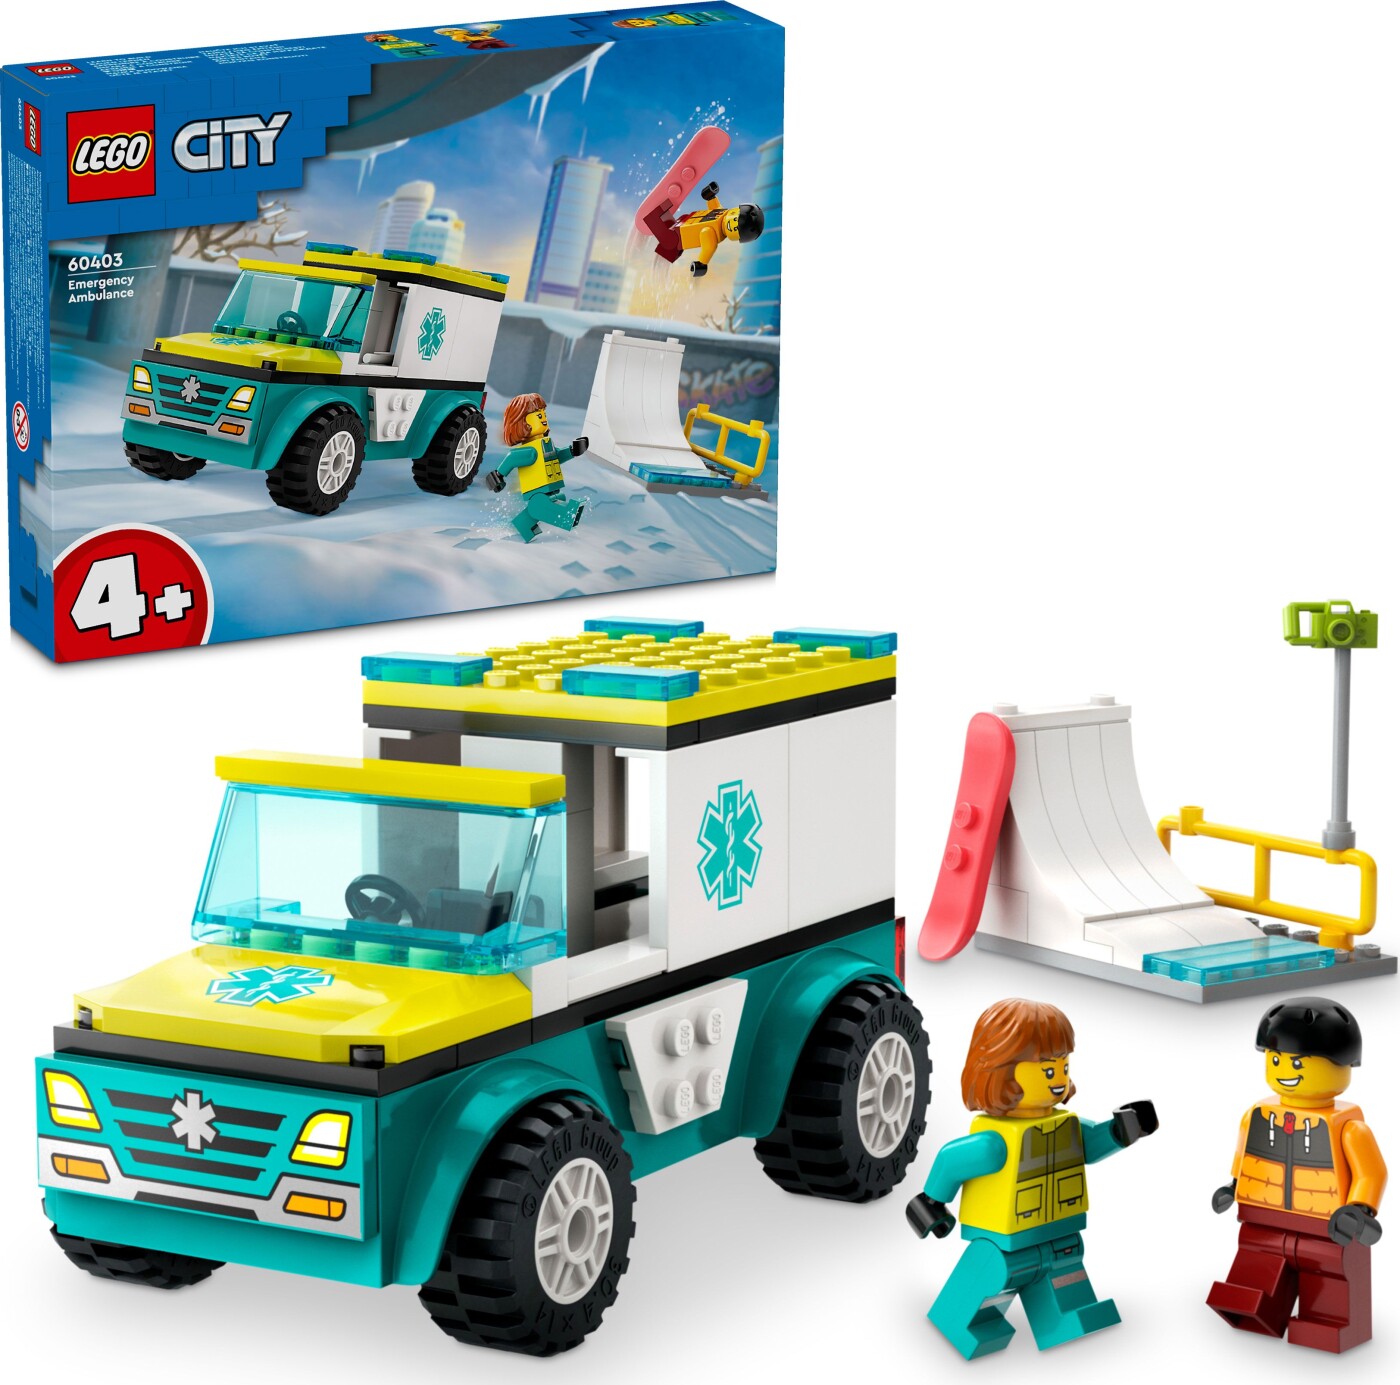 Billede af Lego City - Ambulance Og Snowboarder - 60403 hos Gucca.dk